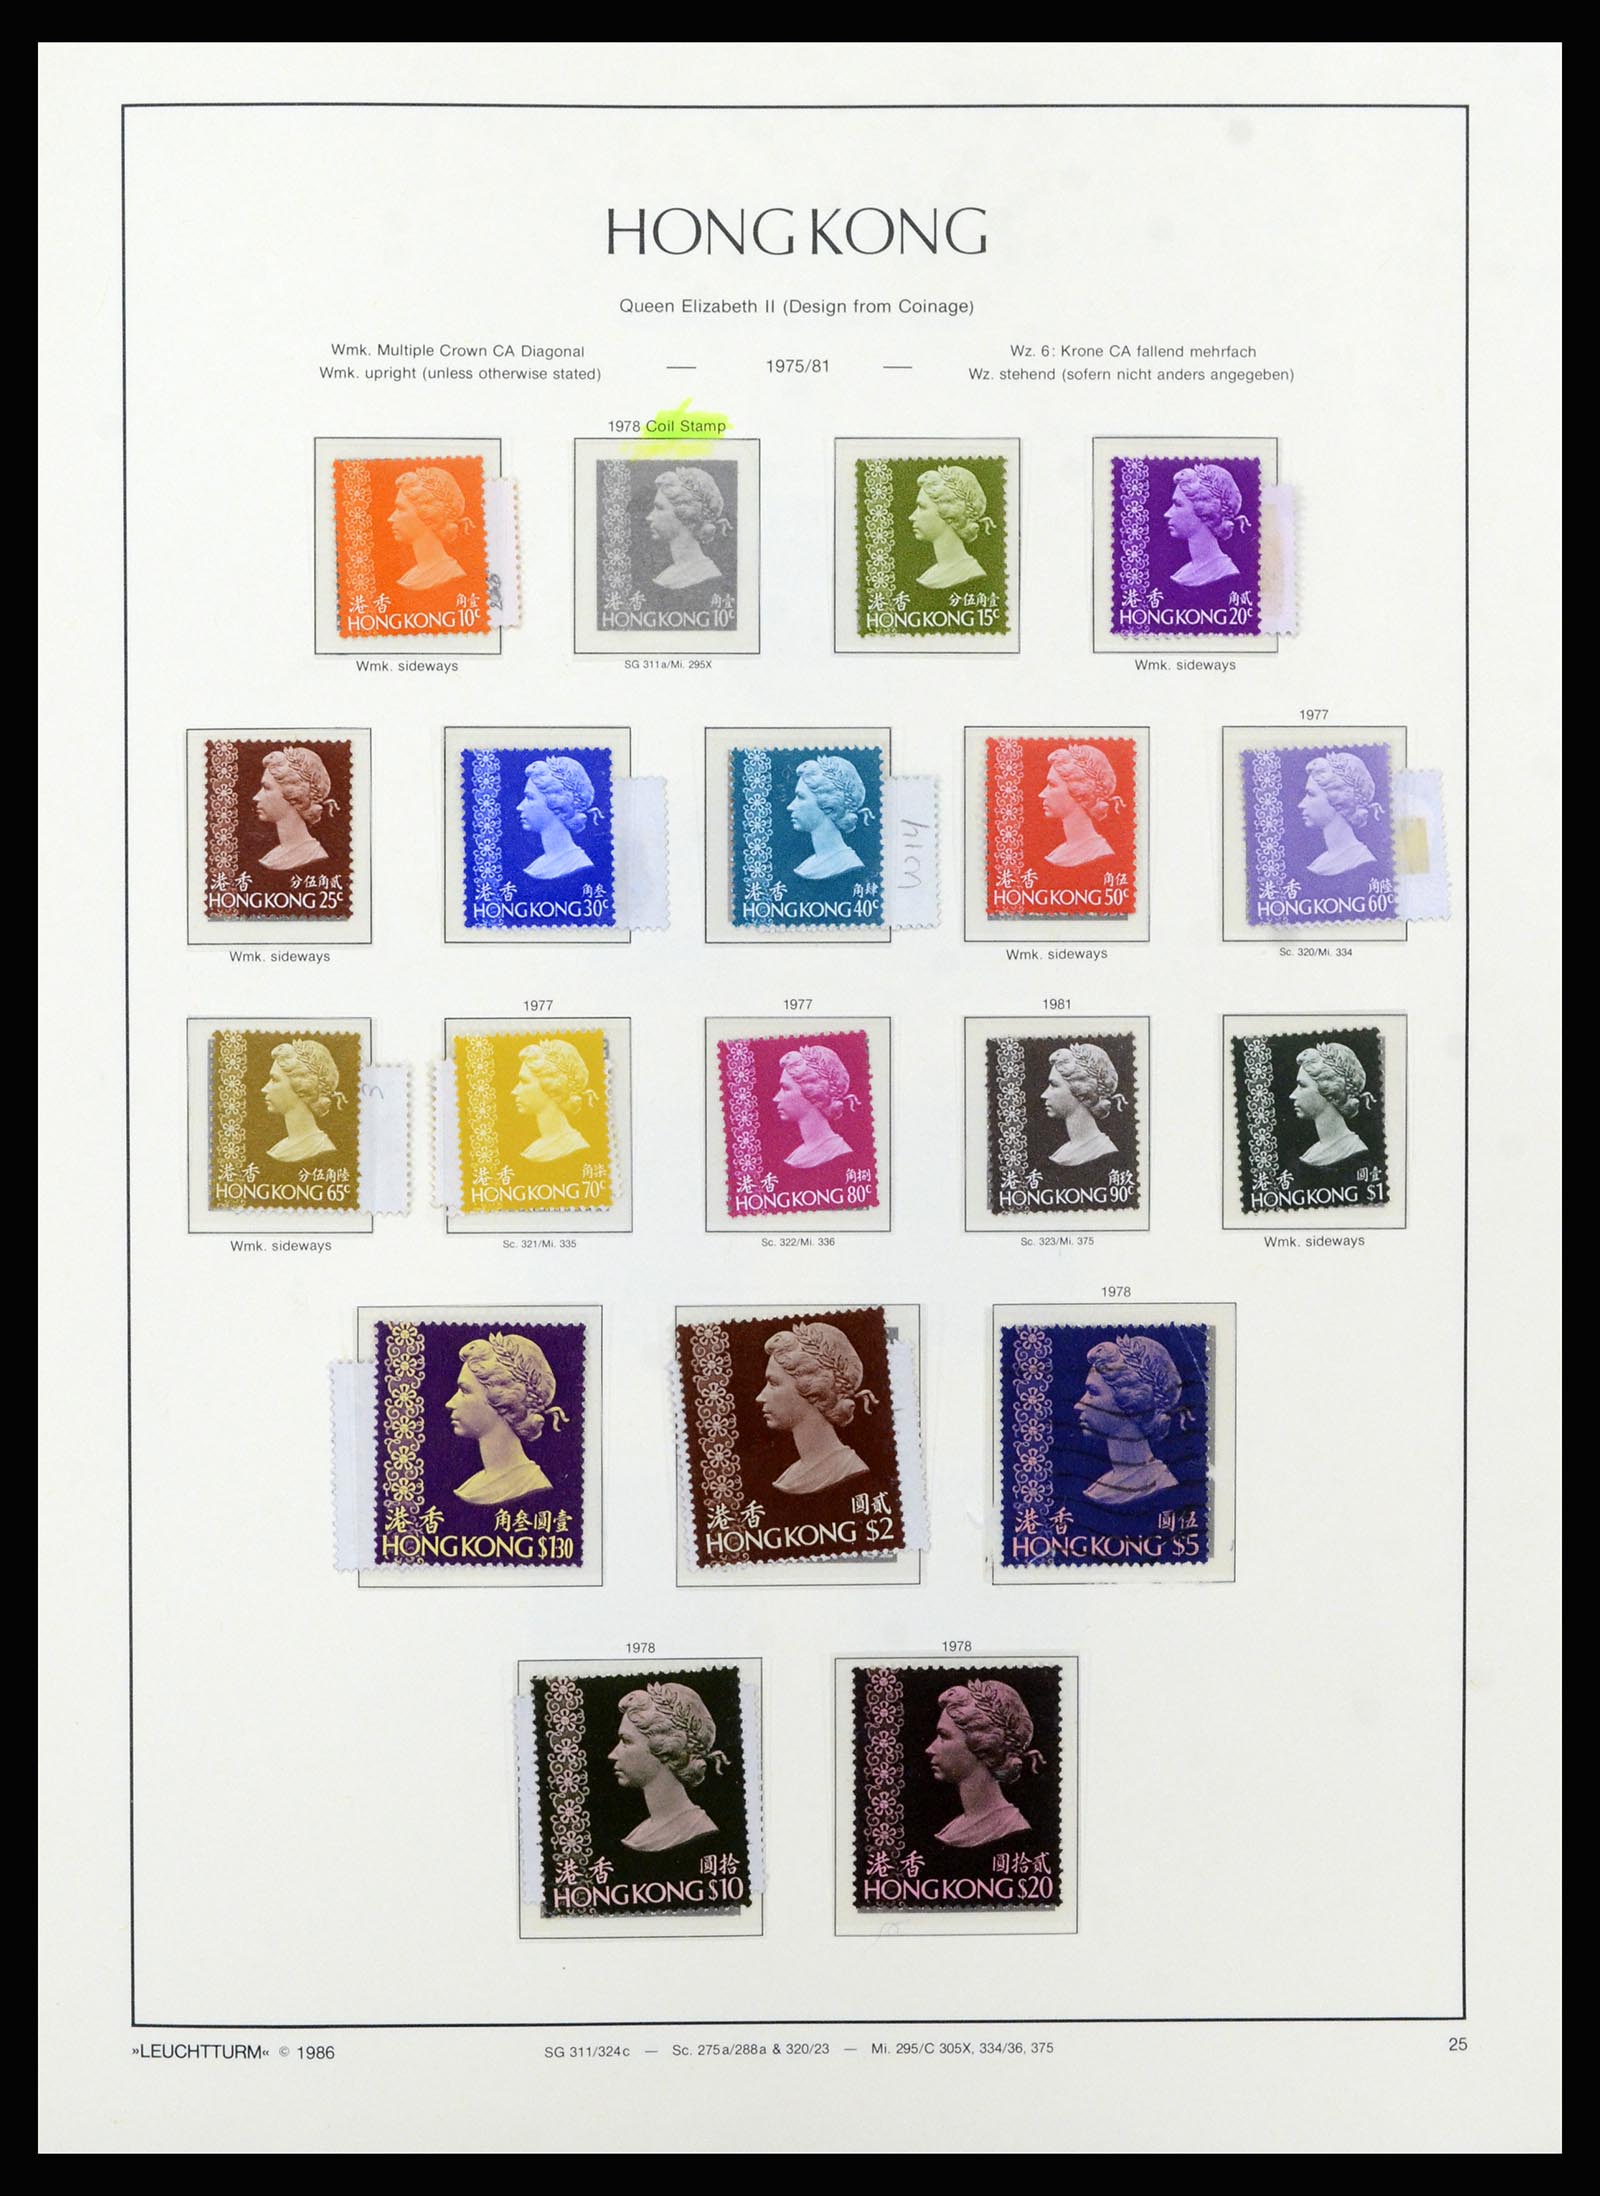 37070 030 - Stamp collection 37070 Hong Kong 1862-1996.